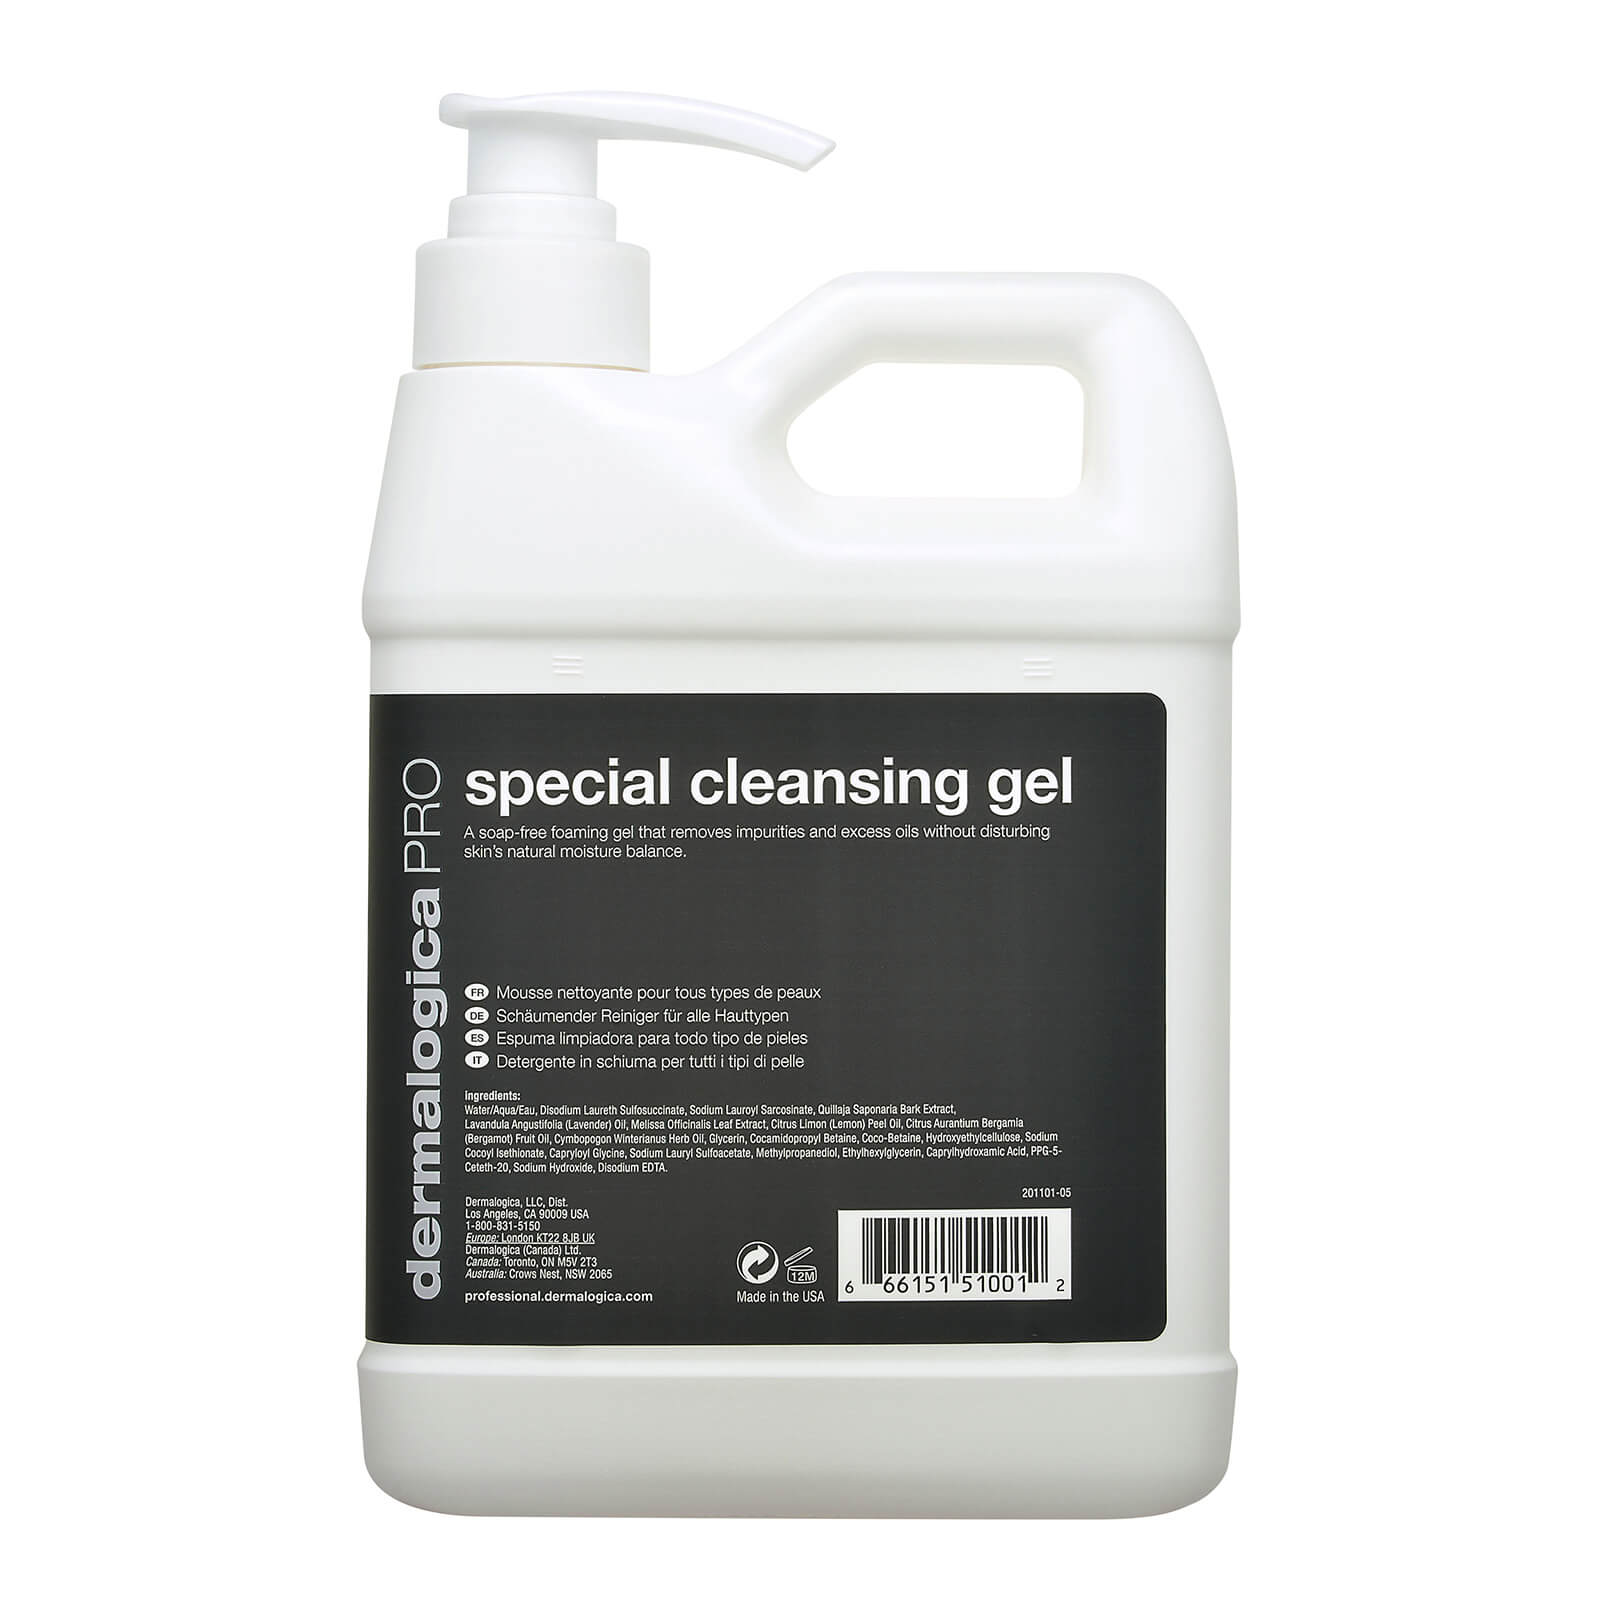 Special Cleansing Gel